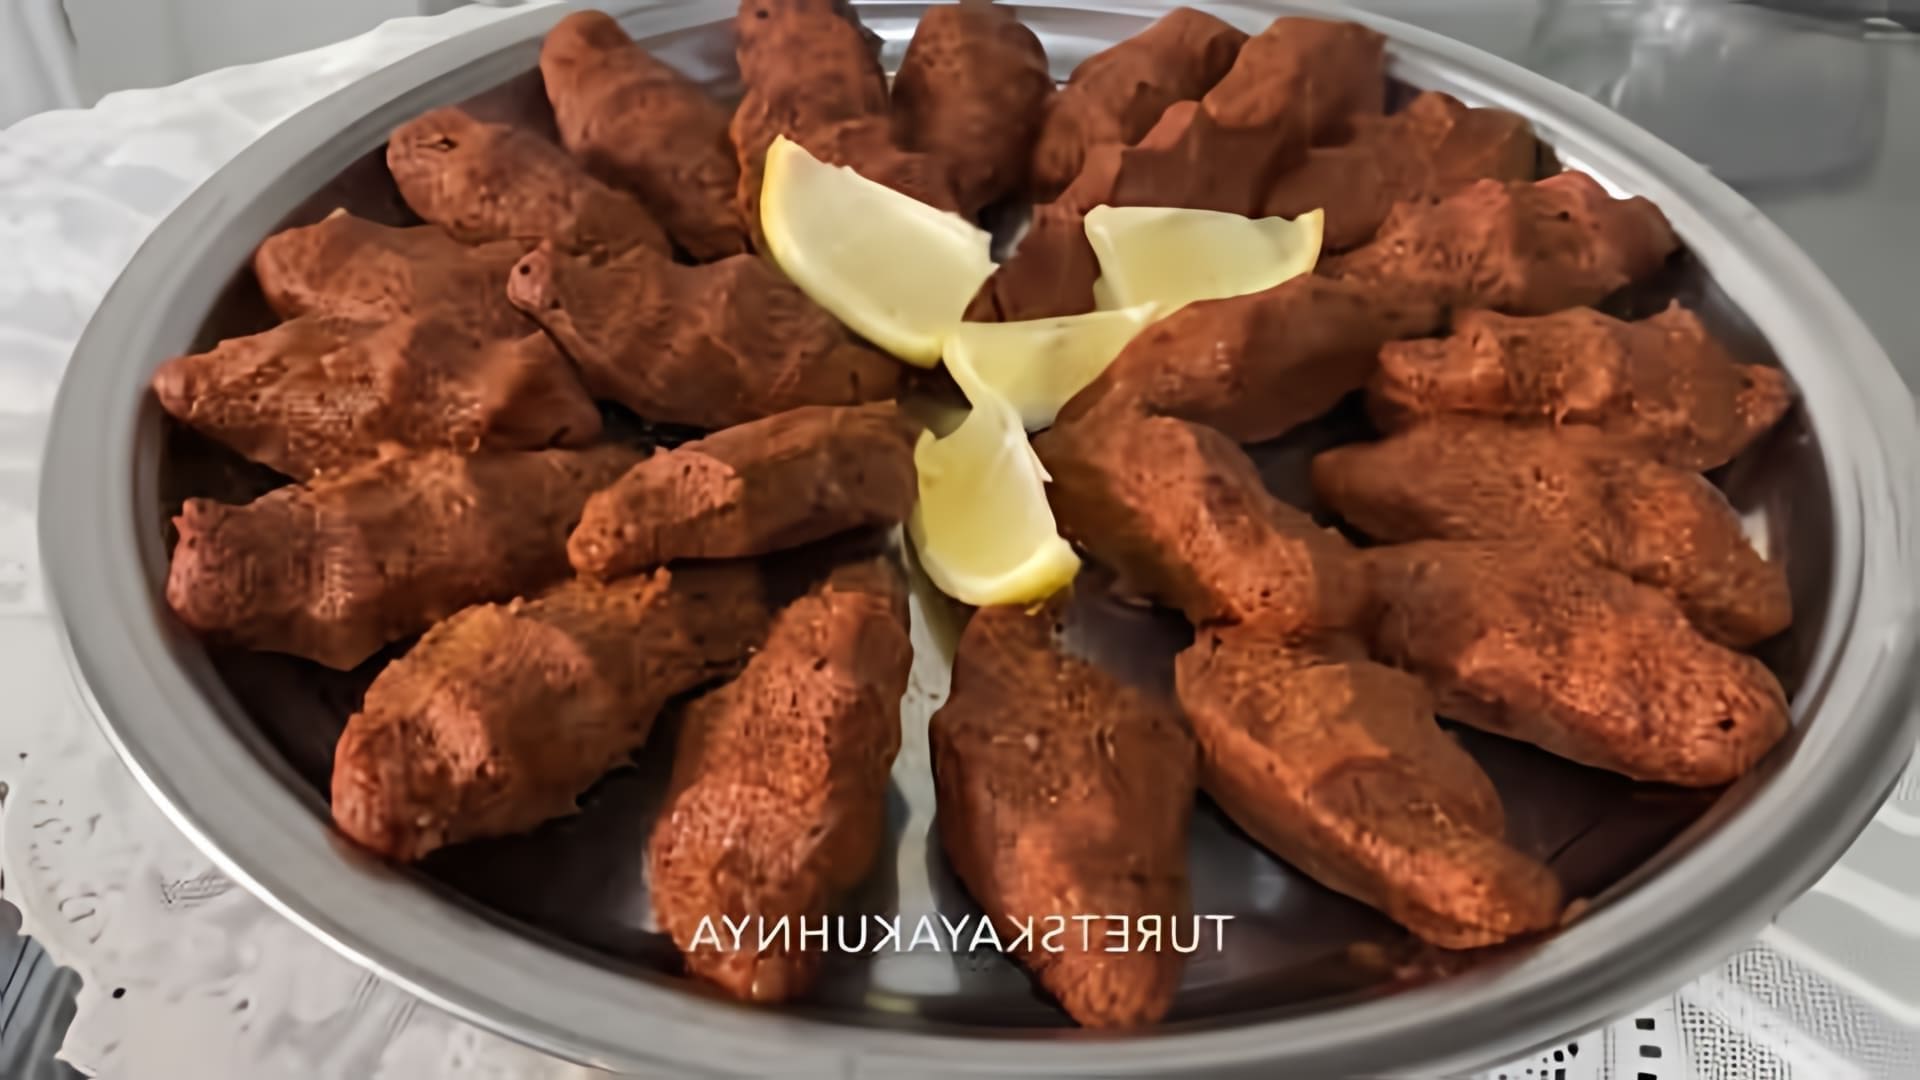 В этом видео показано, как приготовить котлеты из булгура, популярное блюдо турецкой кухни